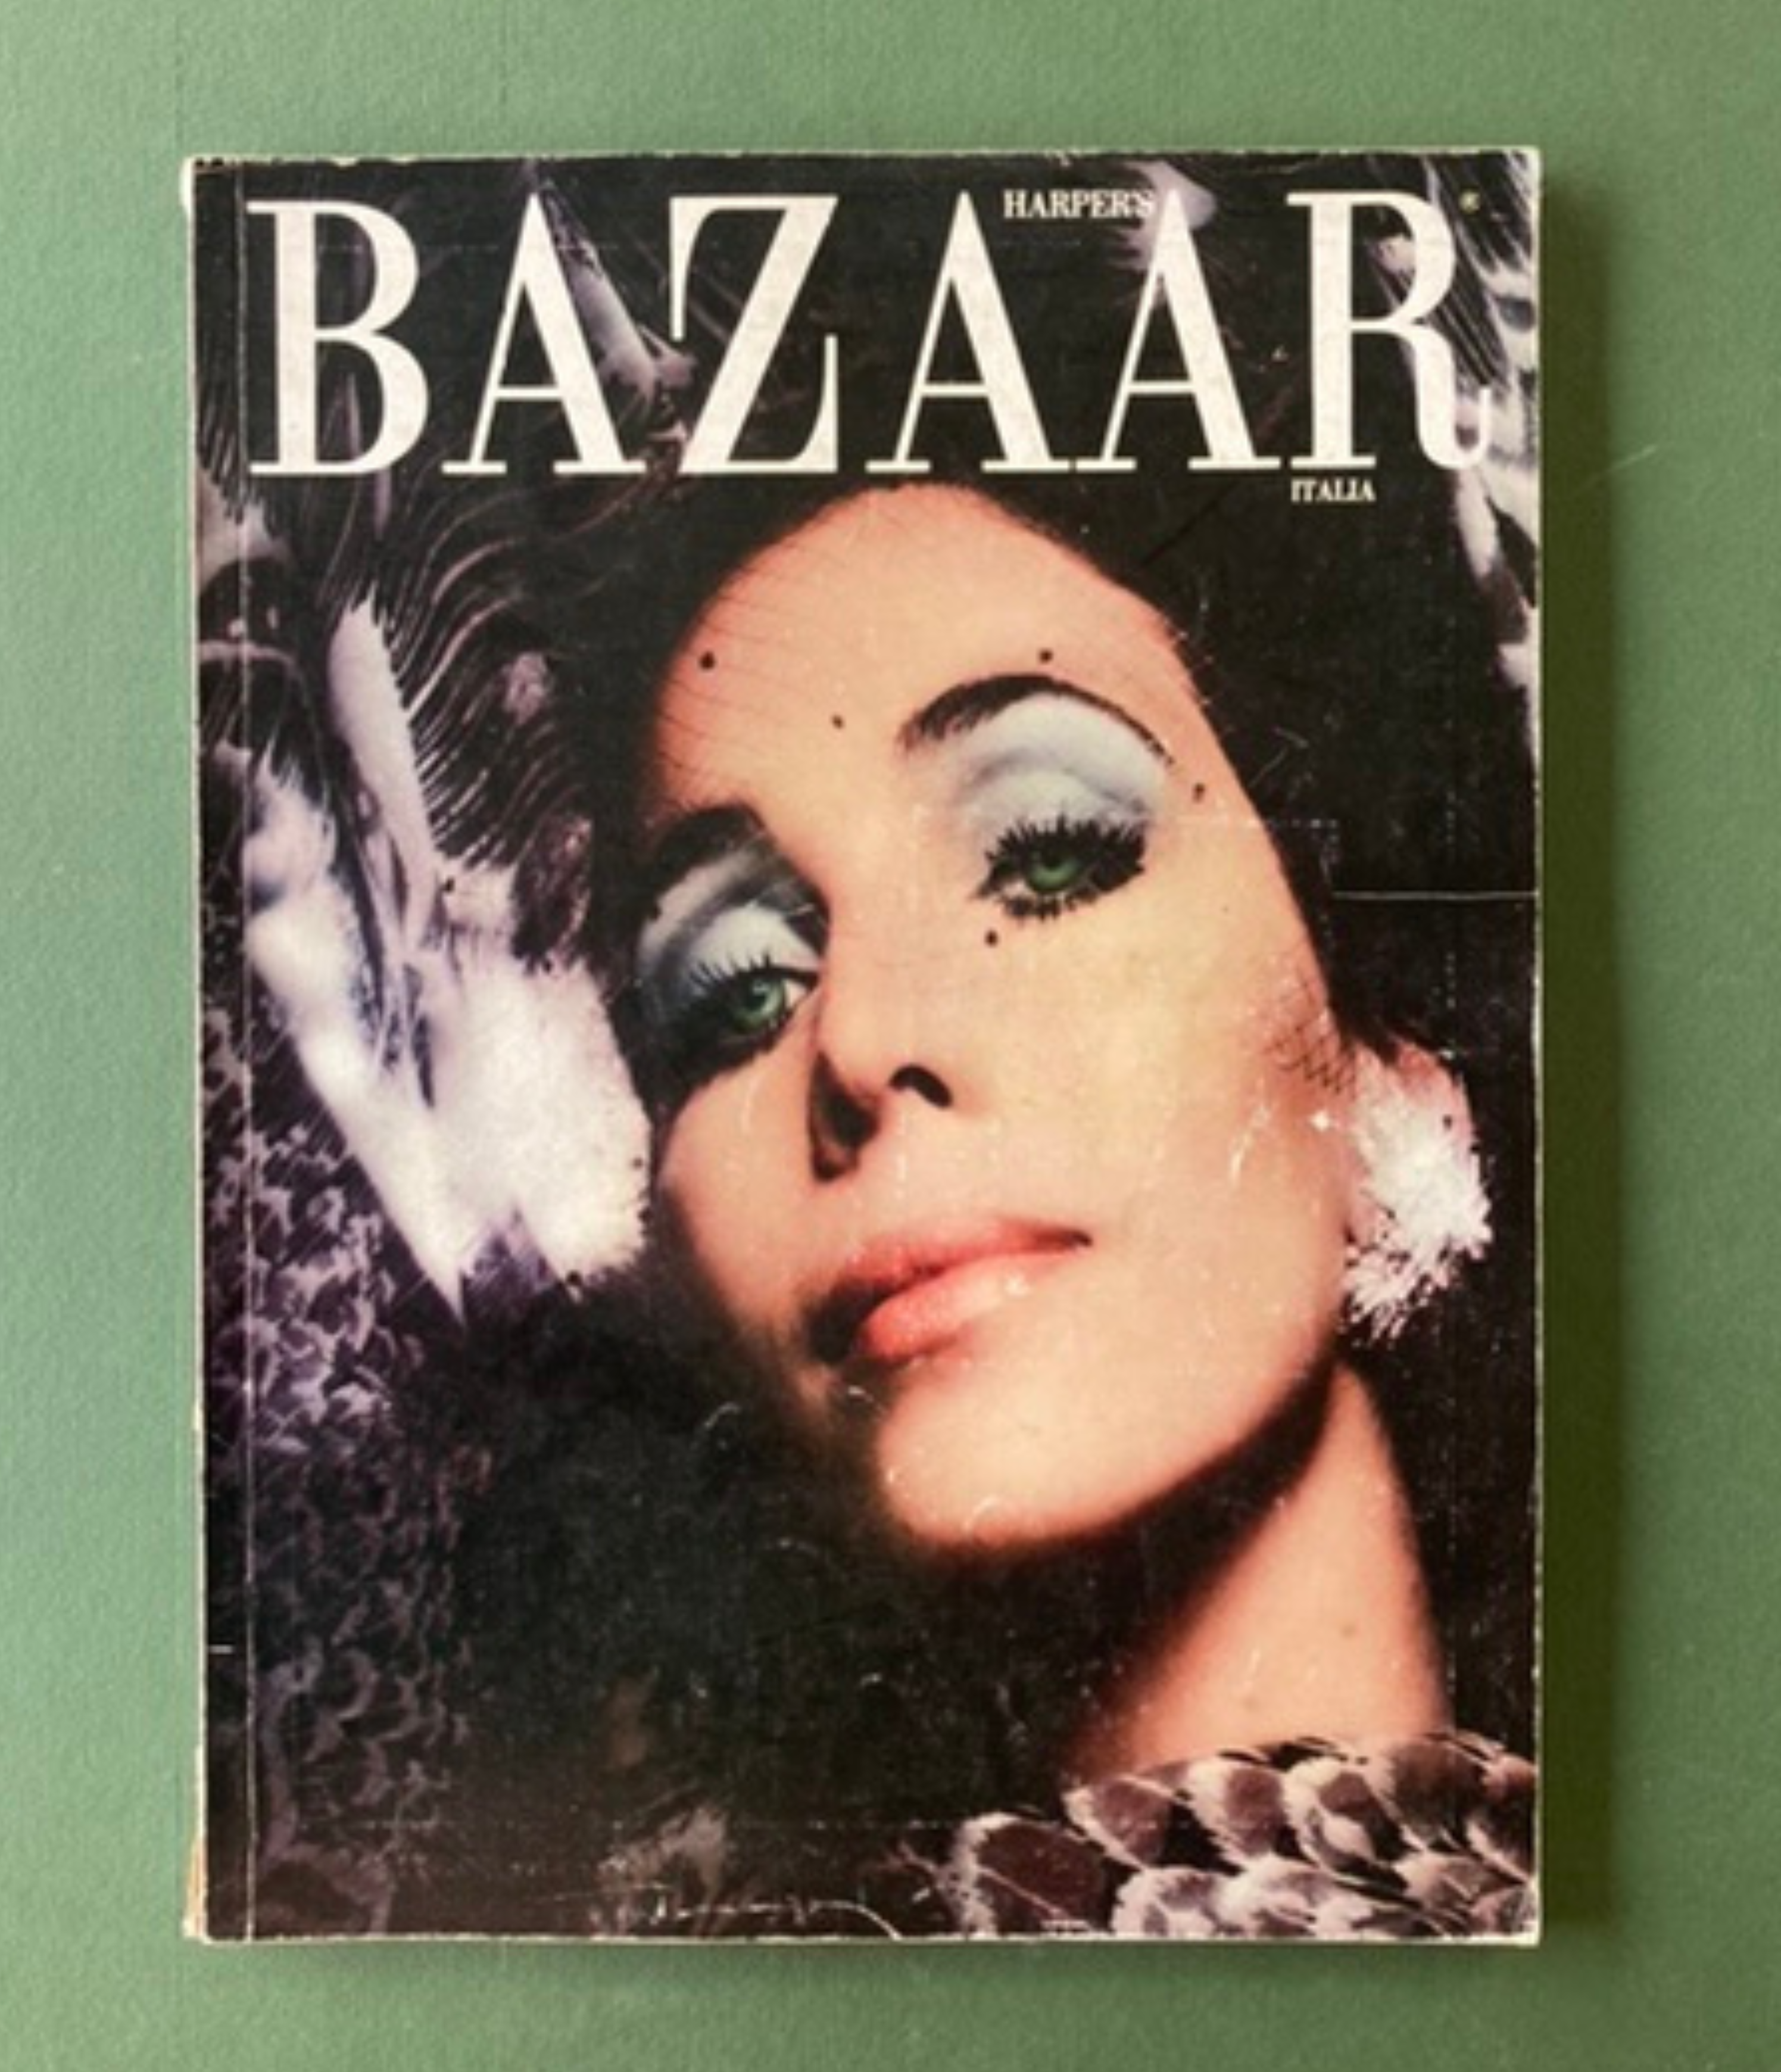 Harper's Bazaar cover 